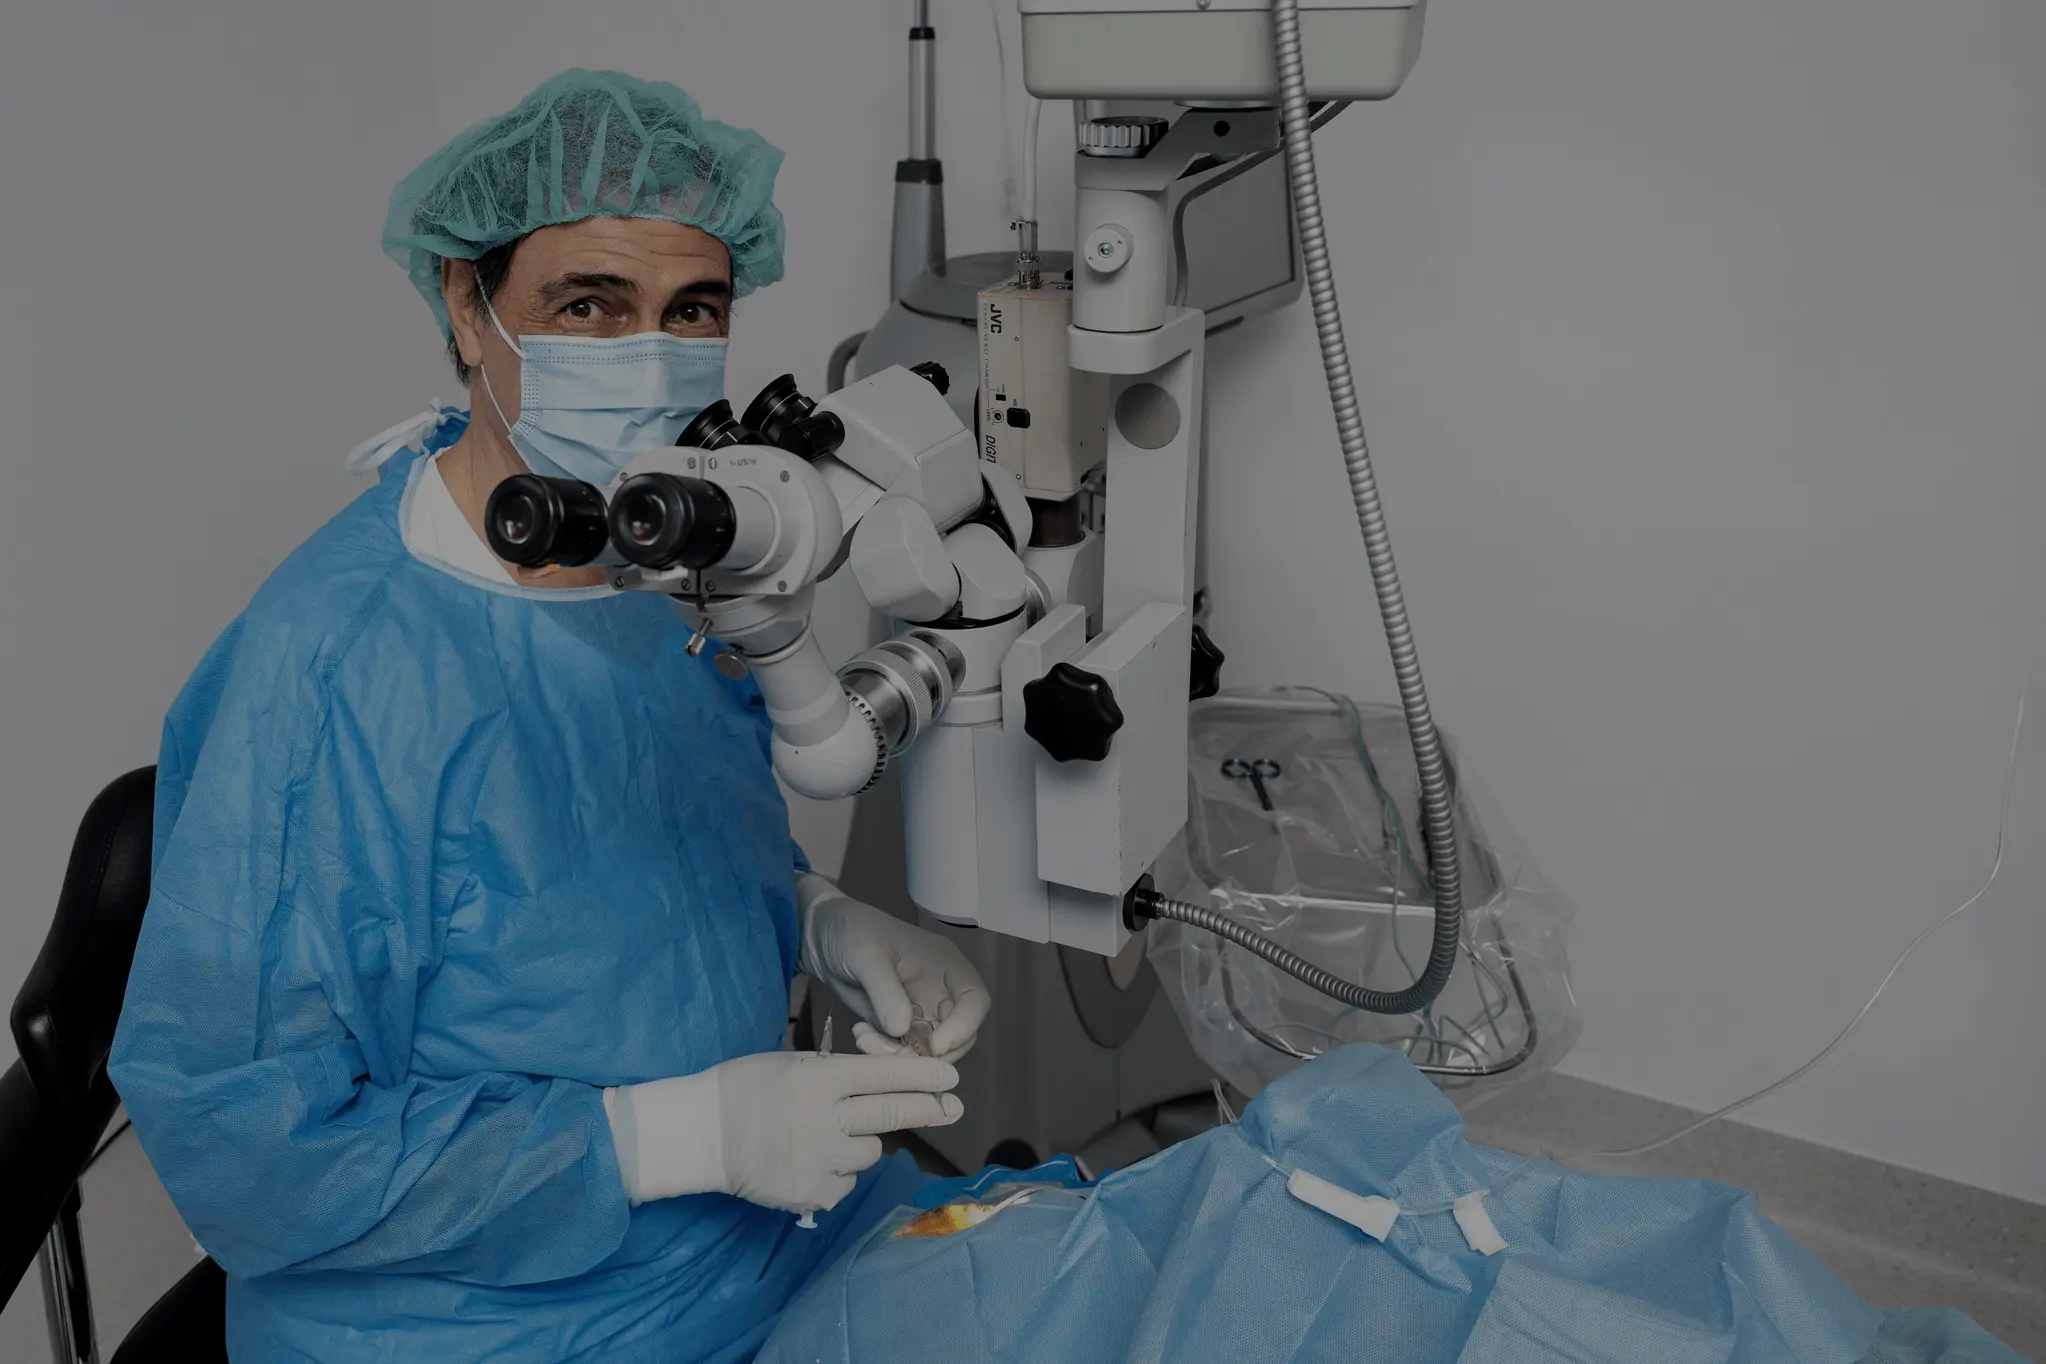 Operatie de cataracta si chirurgie oftalmologica | Visionclinic